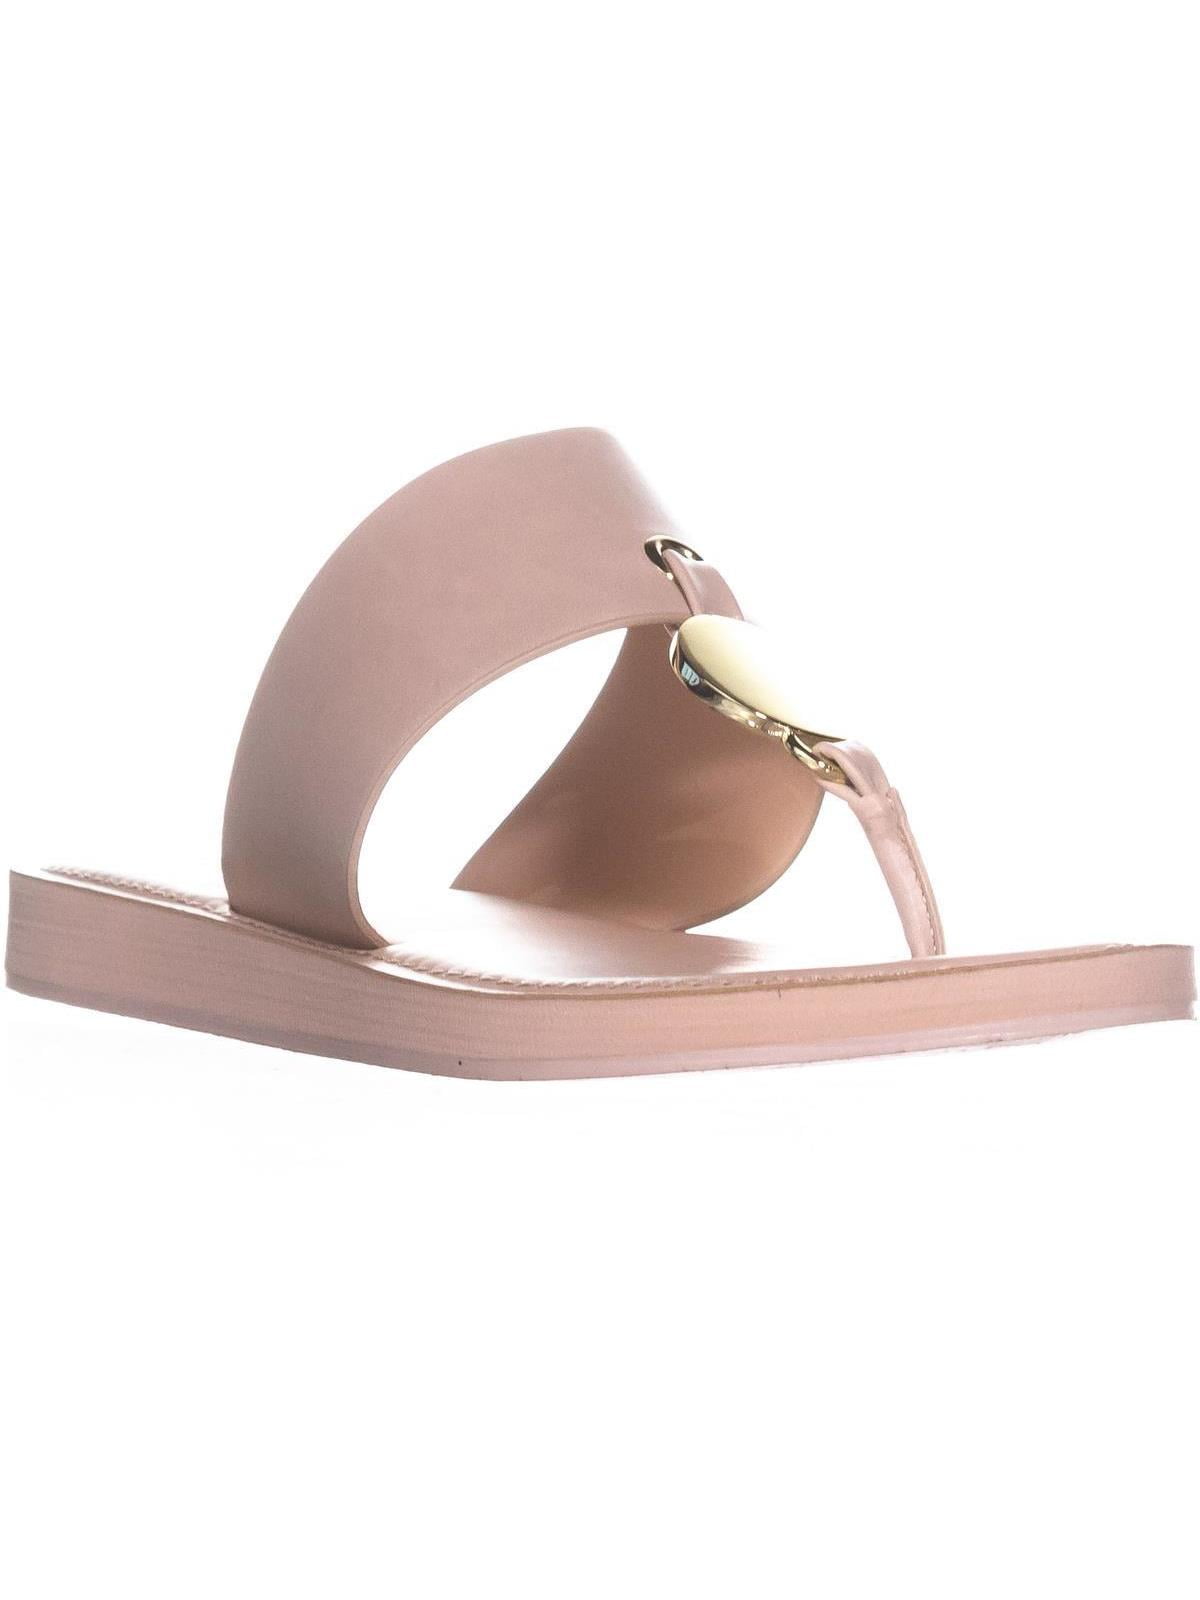 Womens ALDO Yilania Slide Sandals, Light Pink, 9 US / 40 EU - Walmart.com